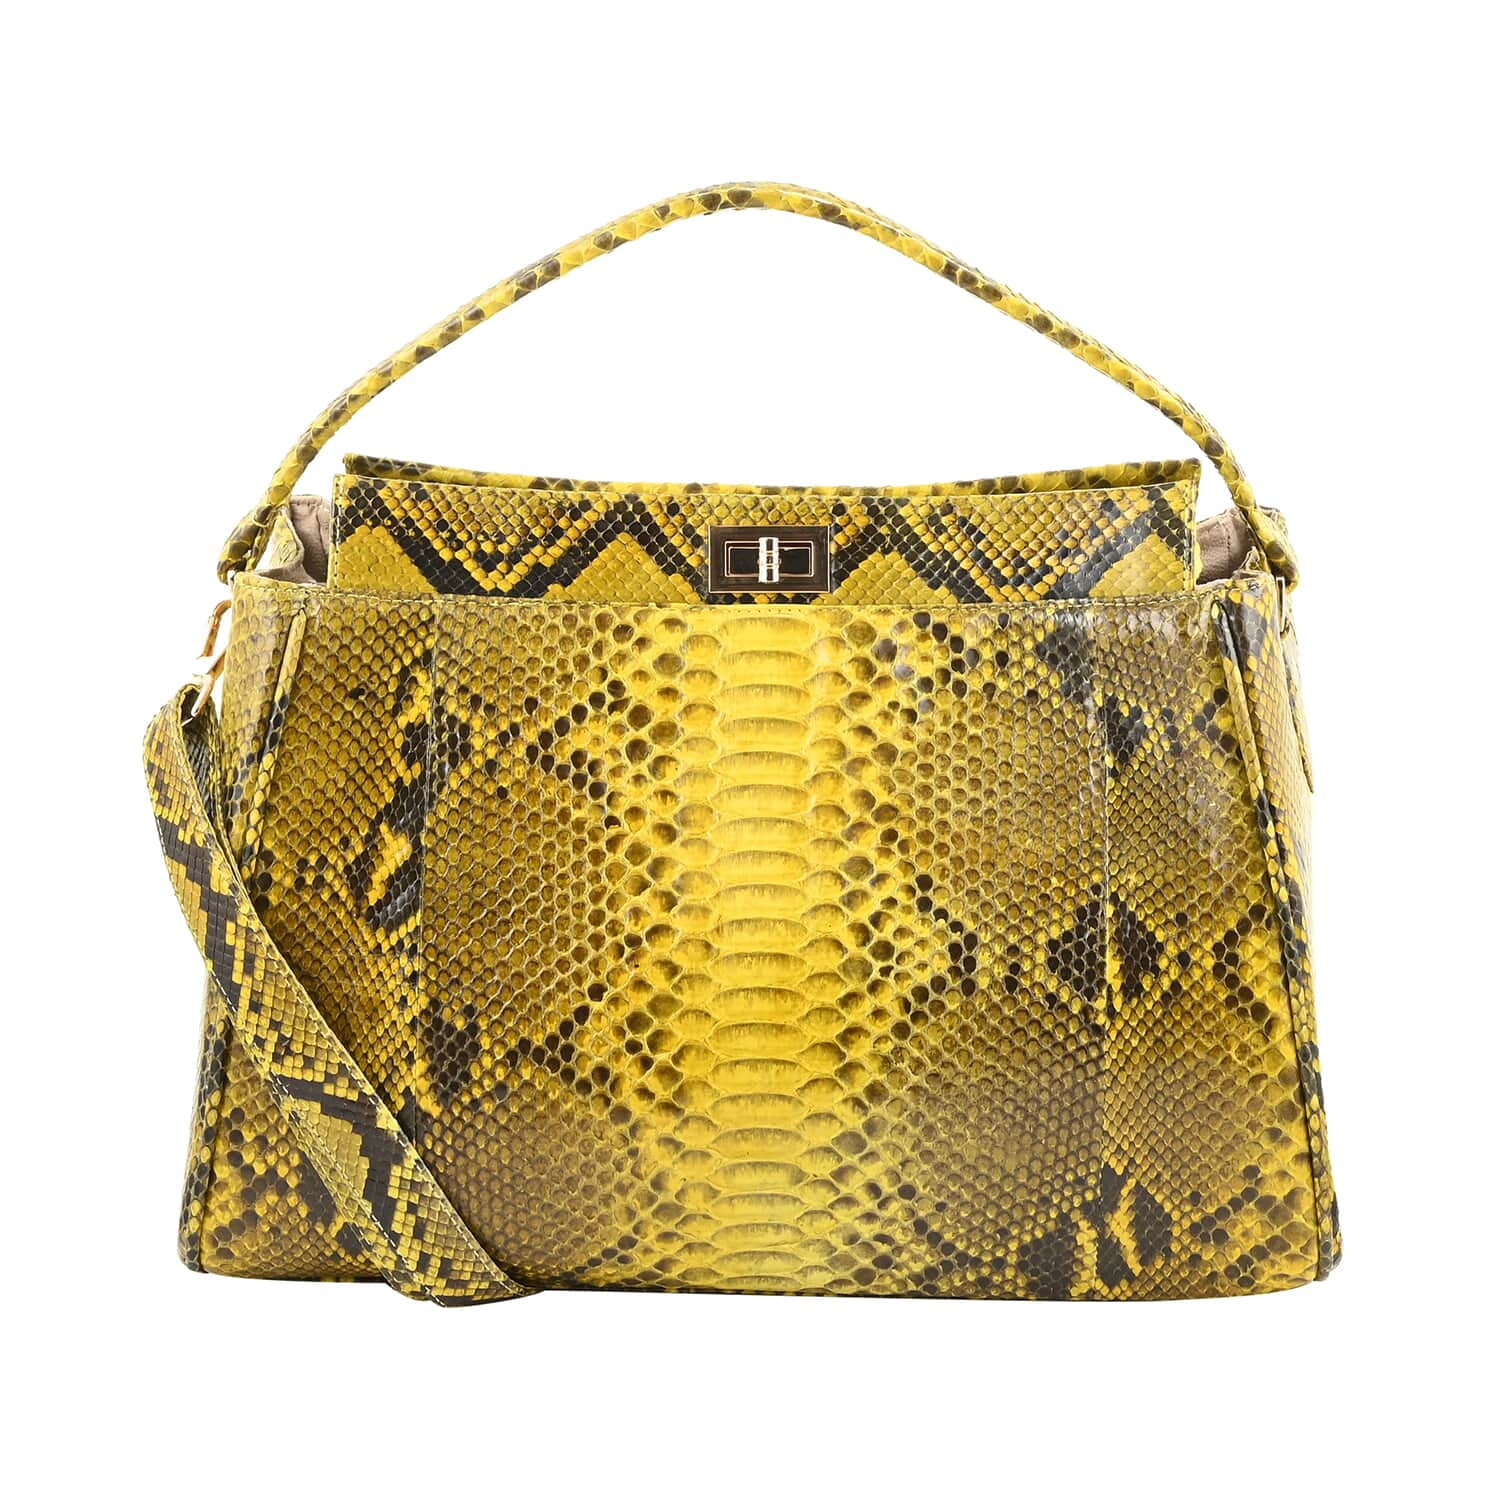 Handmade Genuine Python Snakeskin Shopping Bag Handbag Purse 